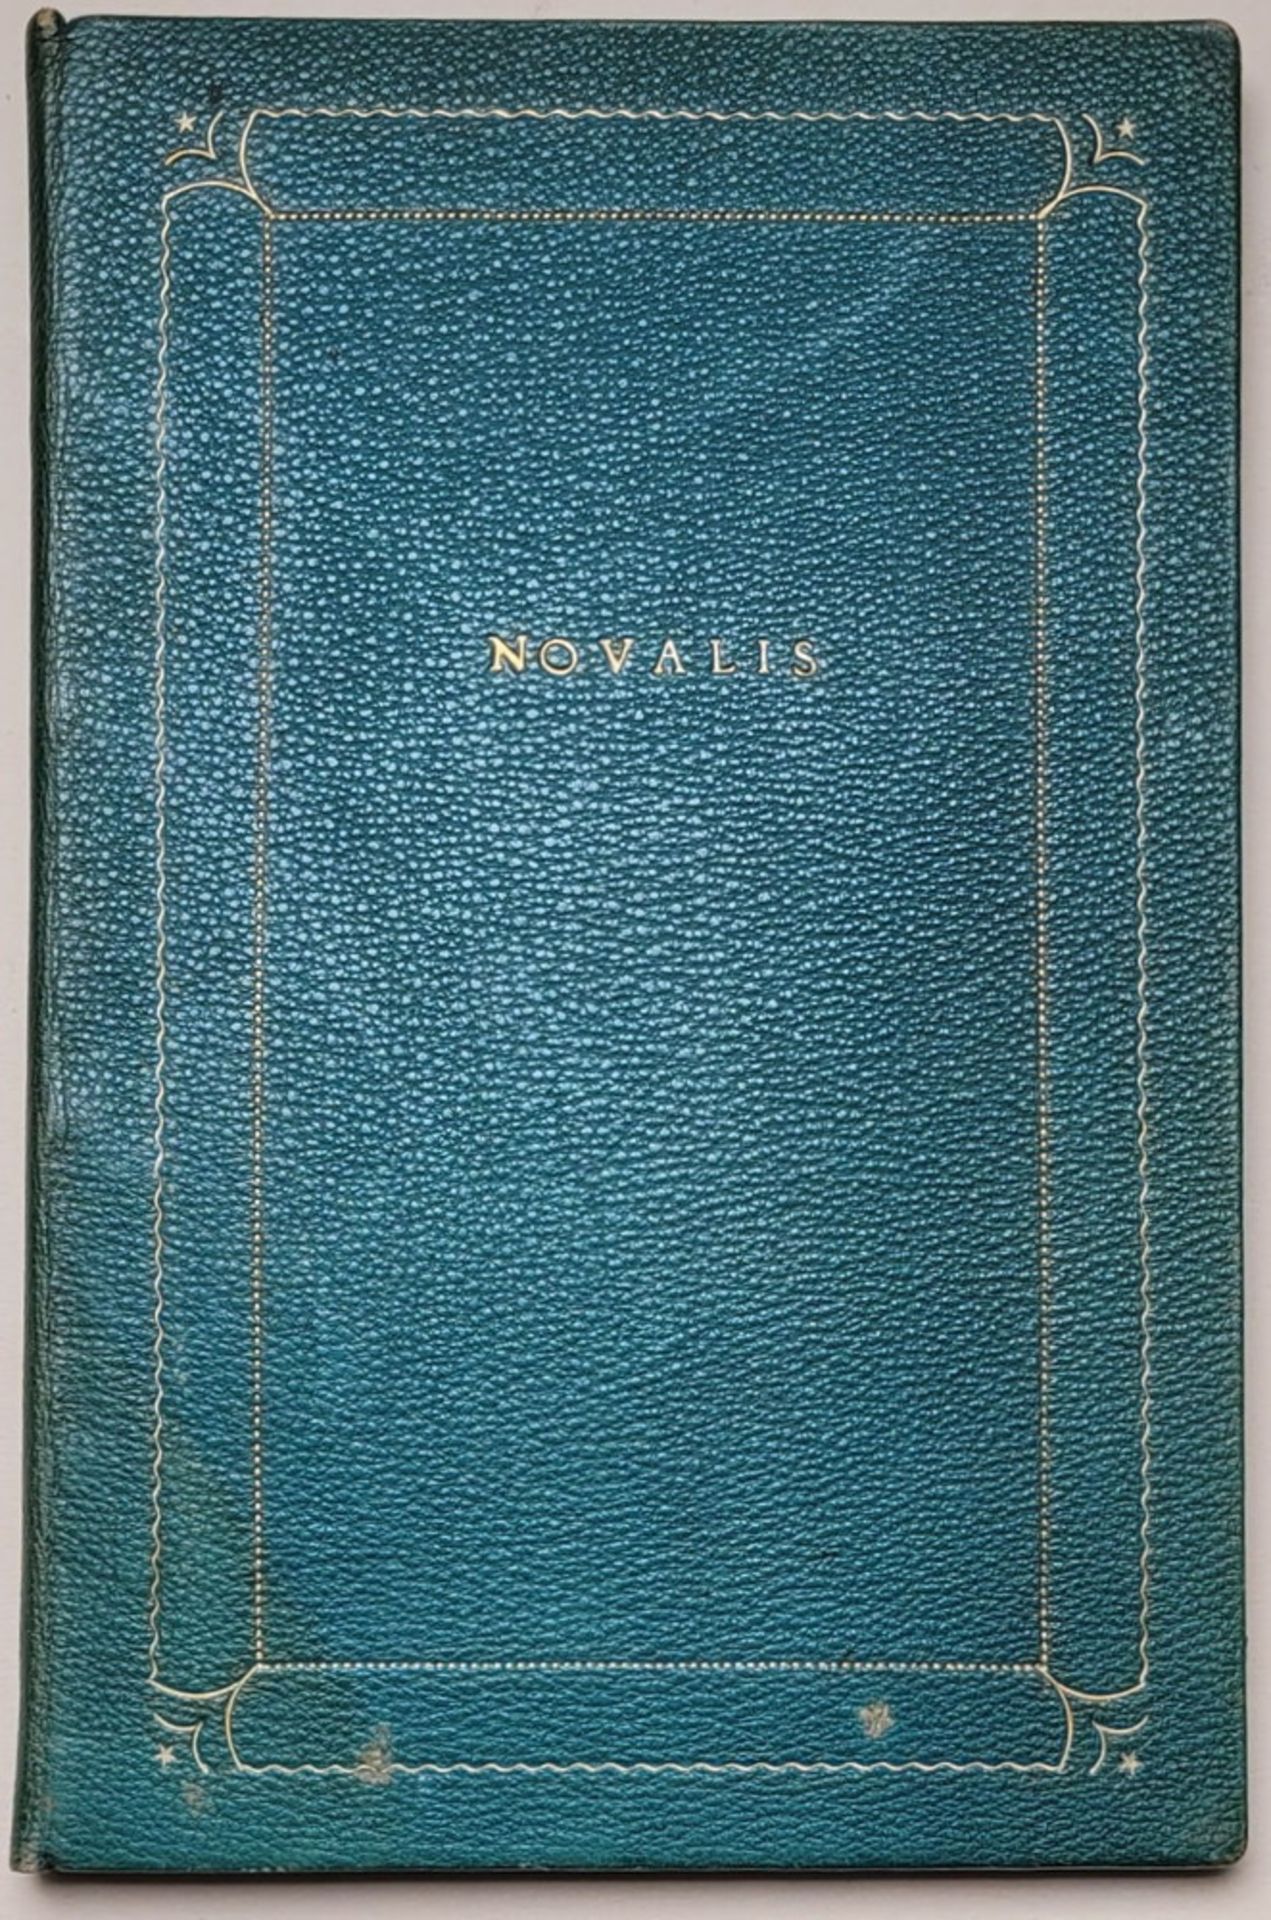 Euphorion - Novalis [Friedrich von Hardenberg]. Märchen von Hyacinth und Rosenblüt.